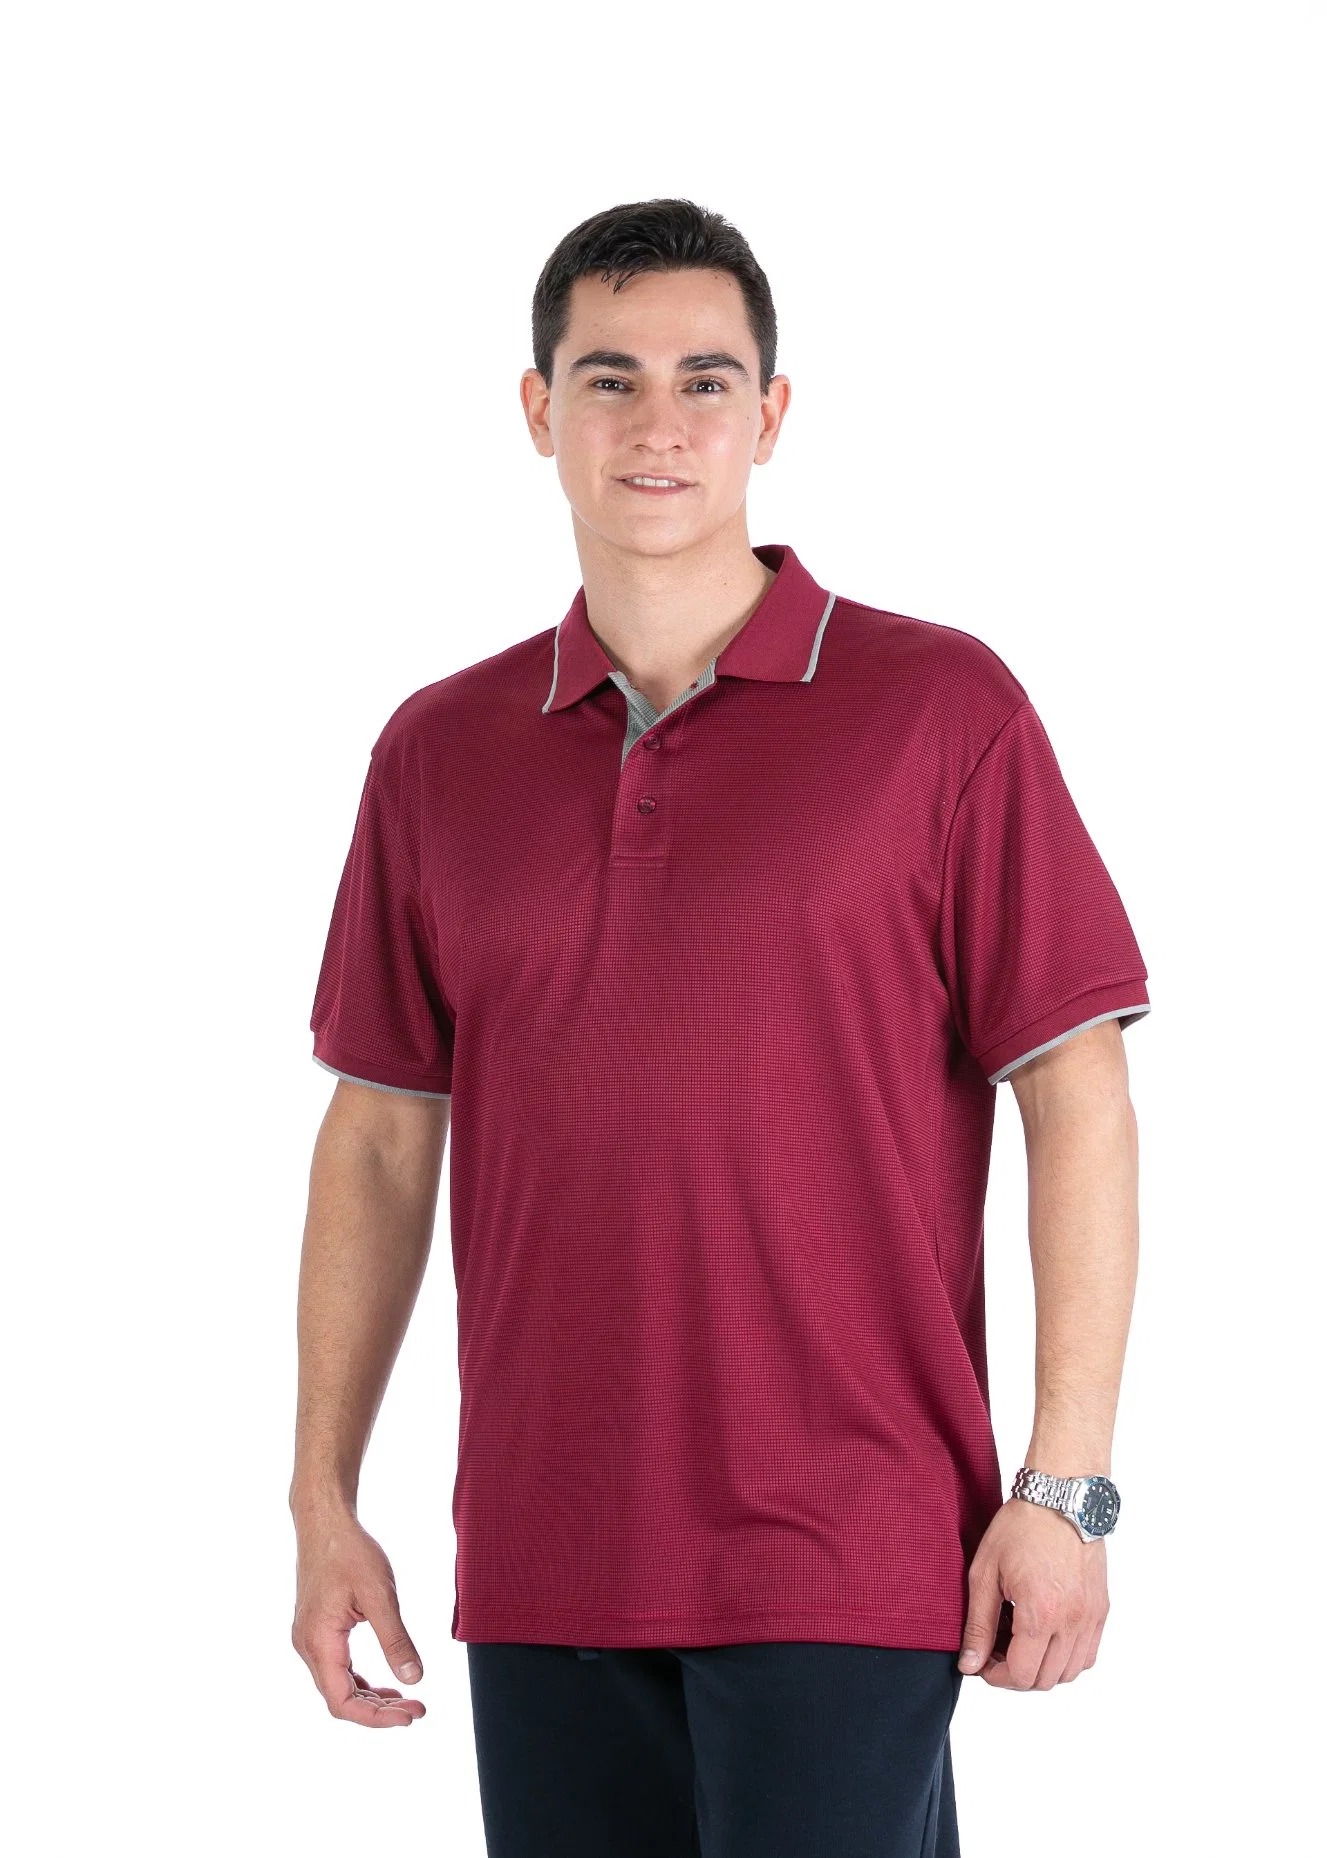 Marca personalizada Polo camisas de manga curta dos homens, homem de poliéster Golf Polo T-shirt